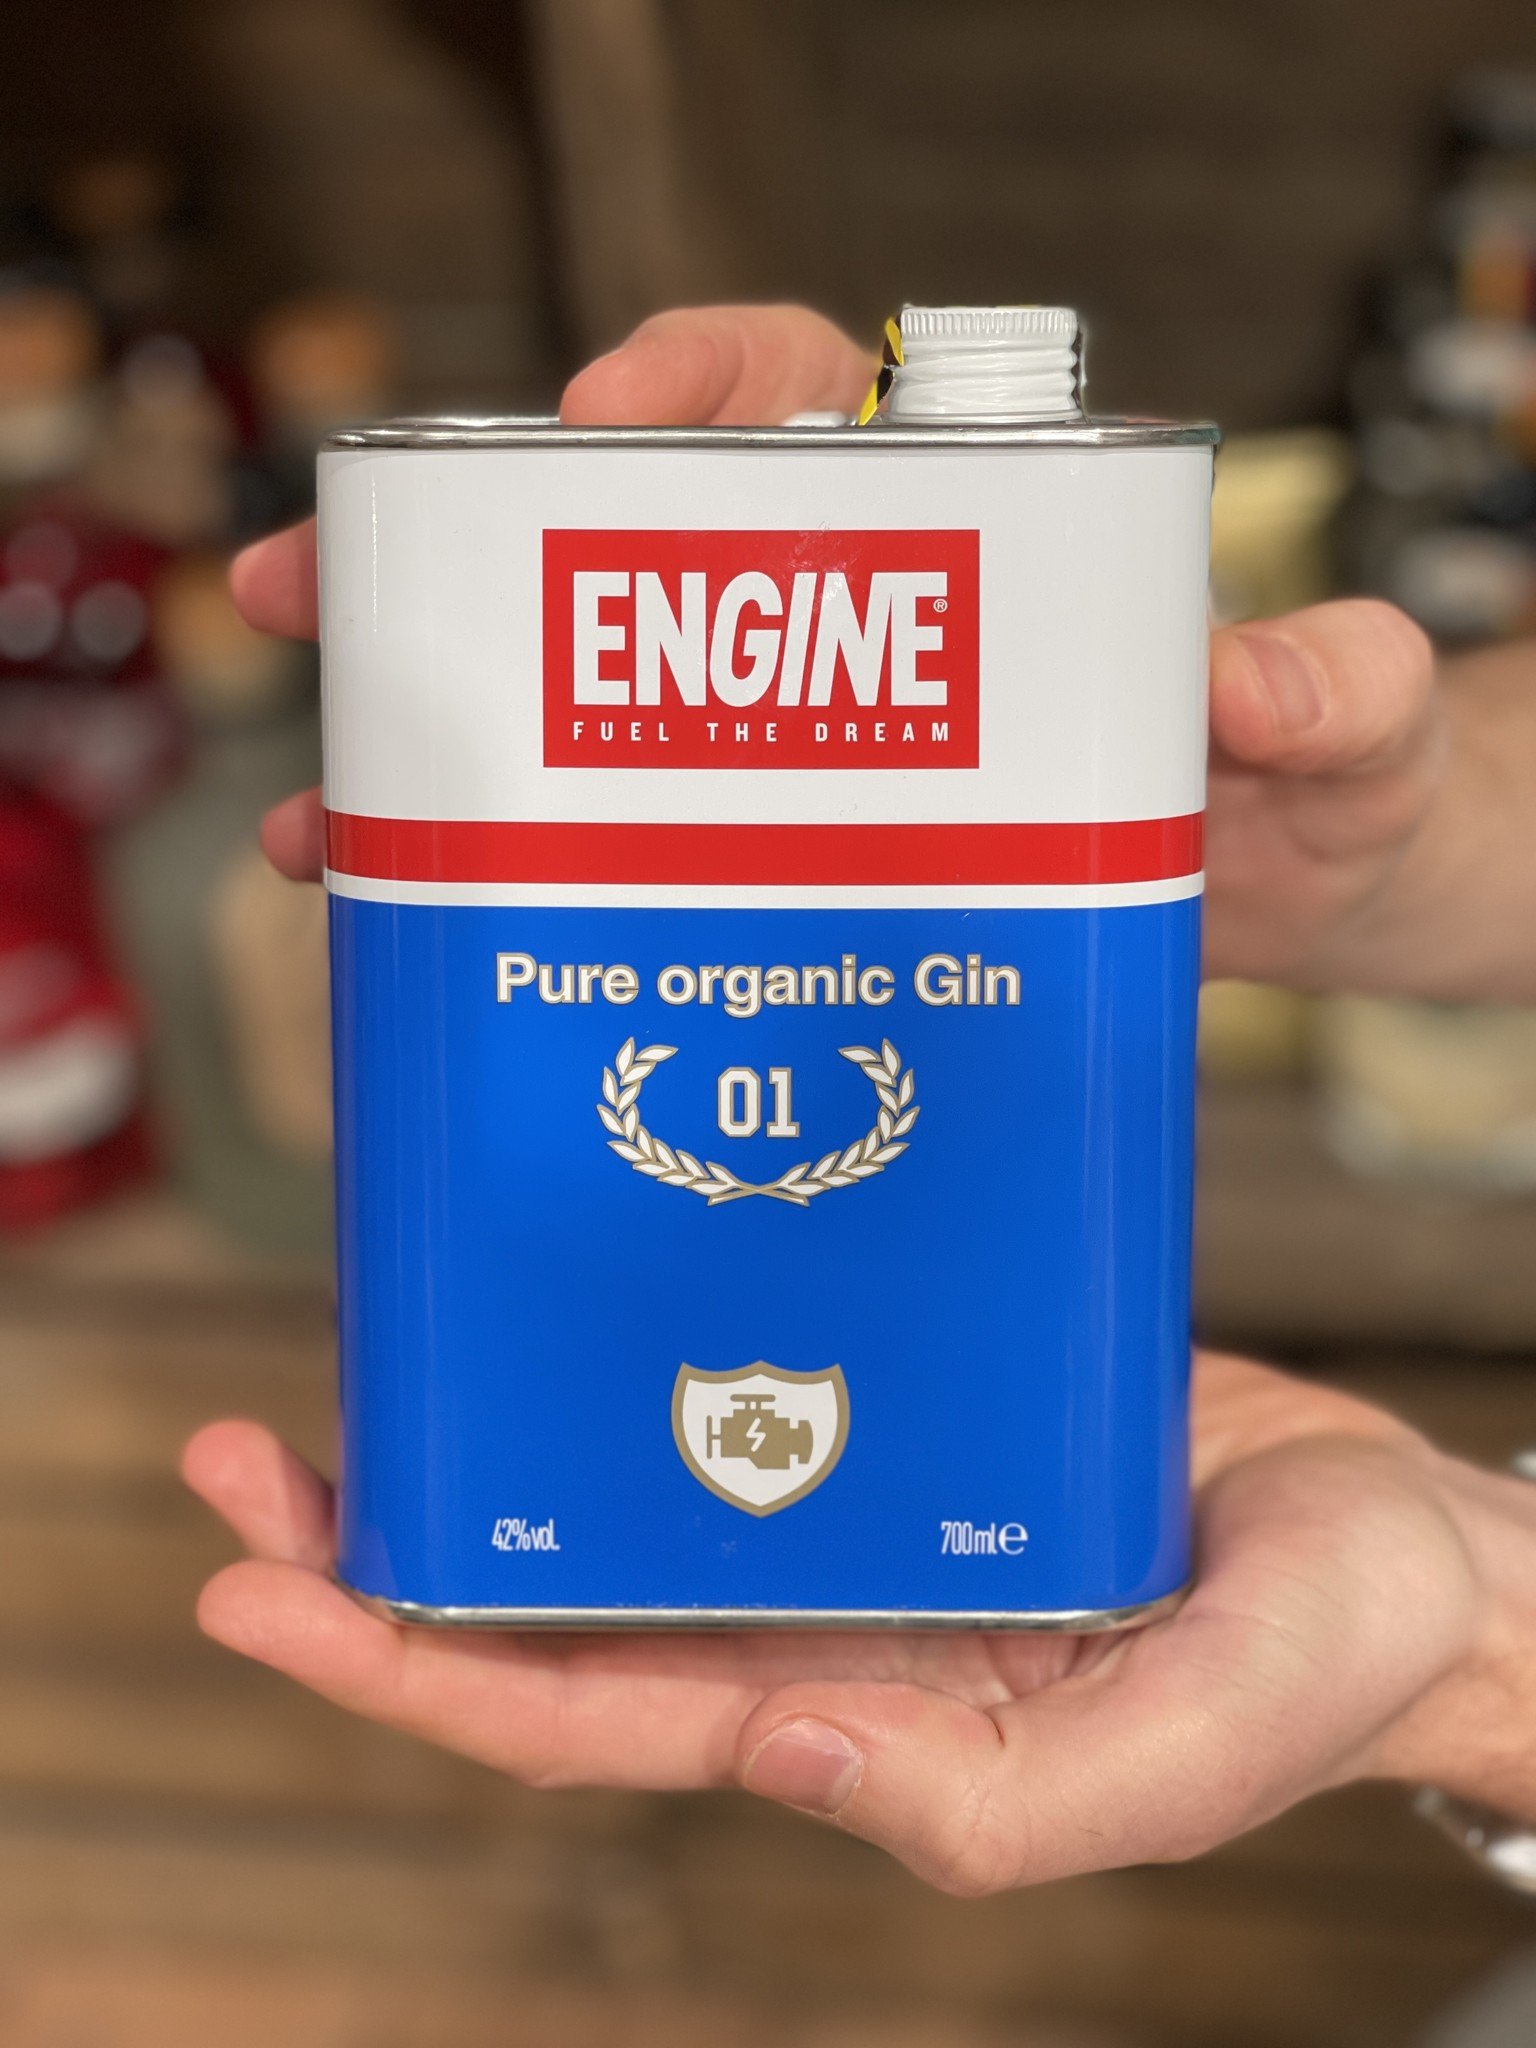 Engine Pure organic Gin - Paolo Dalla Mora